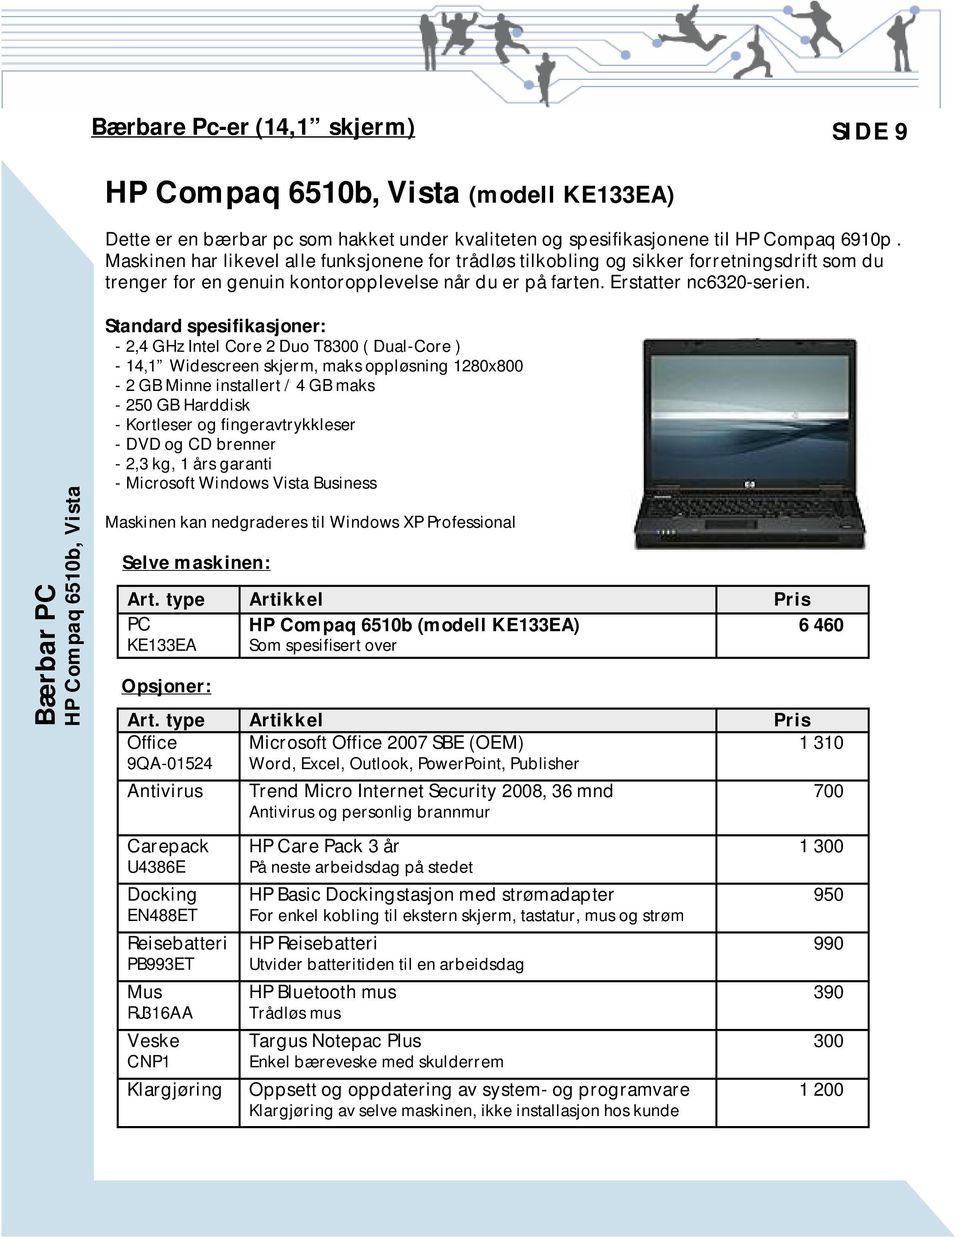 Bærbar PC HP Compaq 6510b, Vista Standard spesifikasjoner: - 2,4 GHz Intel Core 2 Duo T8300 ( Dual-Core ) - 14,1 Widescreen skjerm, maks oppløsning 1280x800-2 GB Minne installert / 4 GB maks - 250 GB